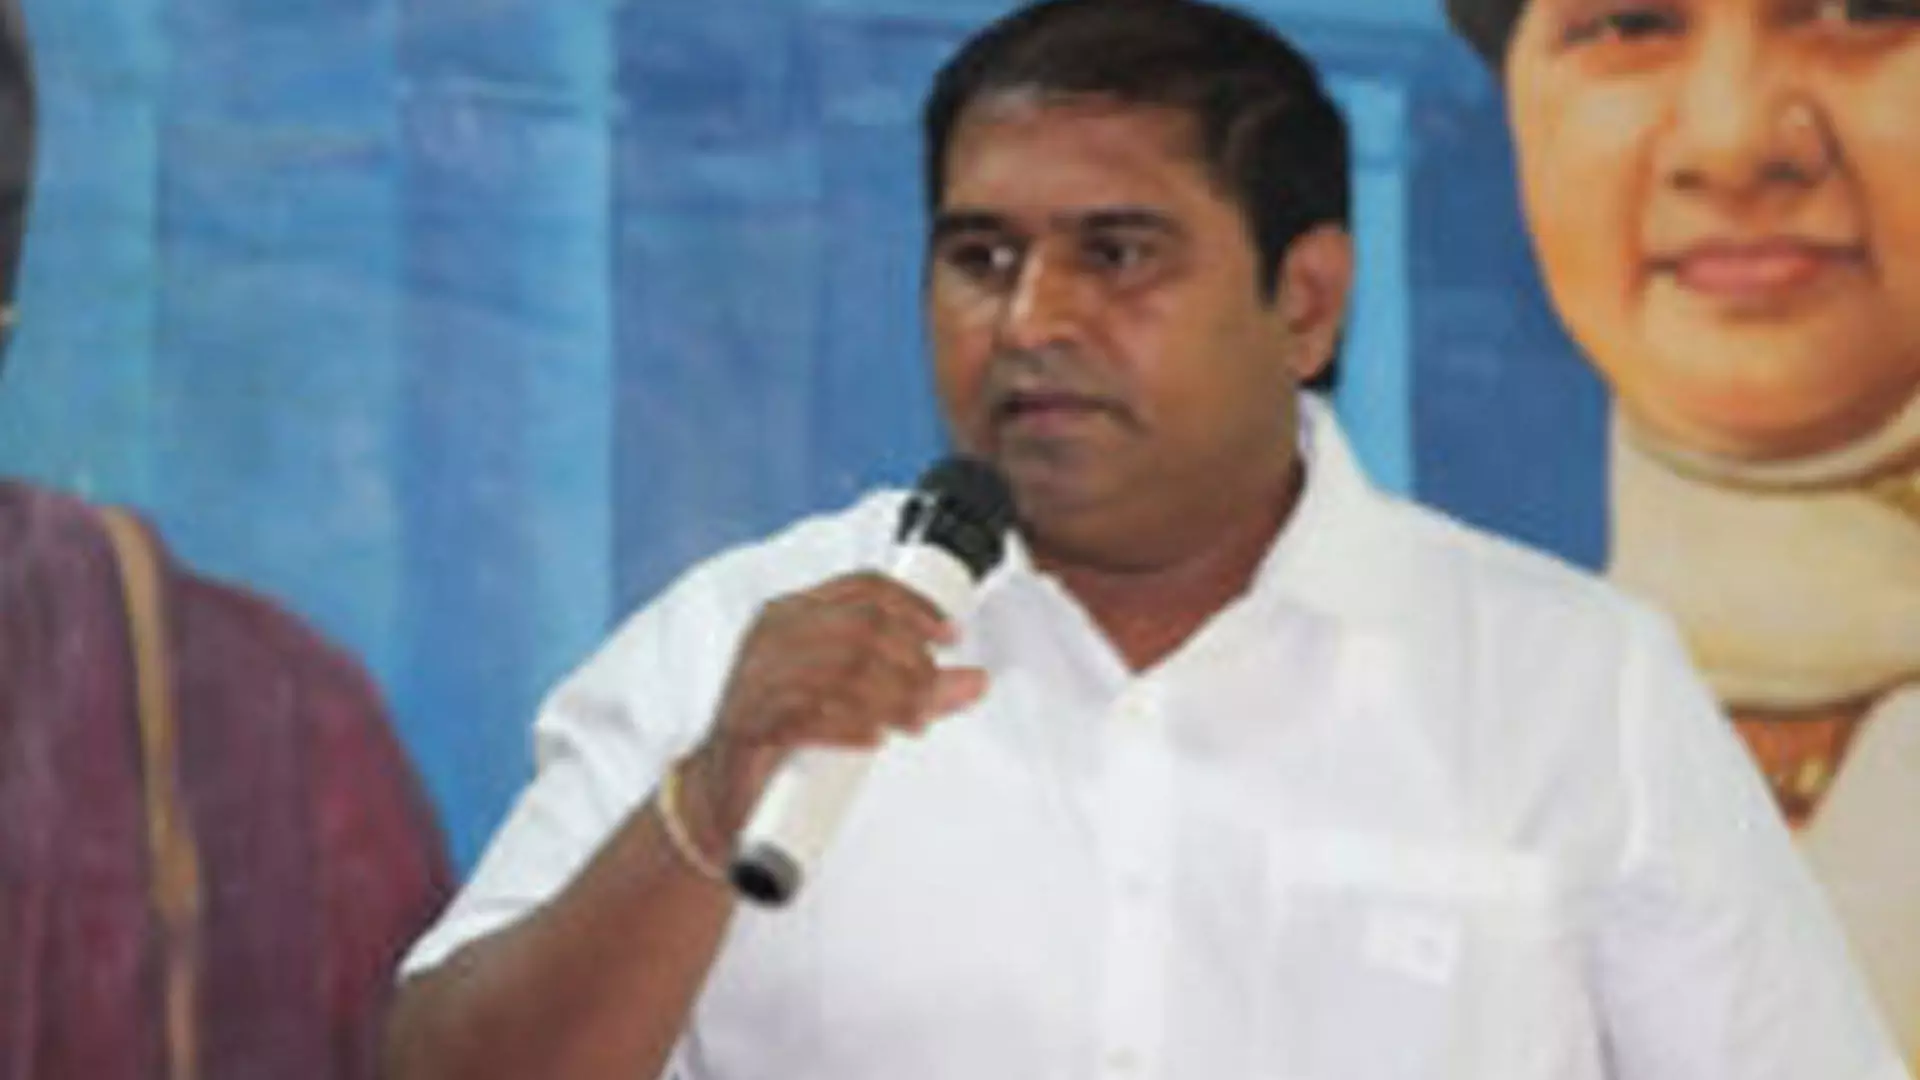 Tamil Nadu News : बीएसपी तमिलनाडु अध्यक्ष आर्मस्ट्रांग की पेरांबूर में हत्या कर दी